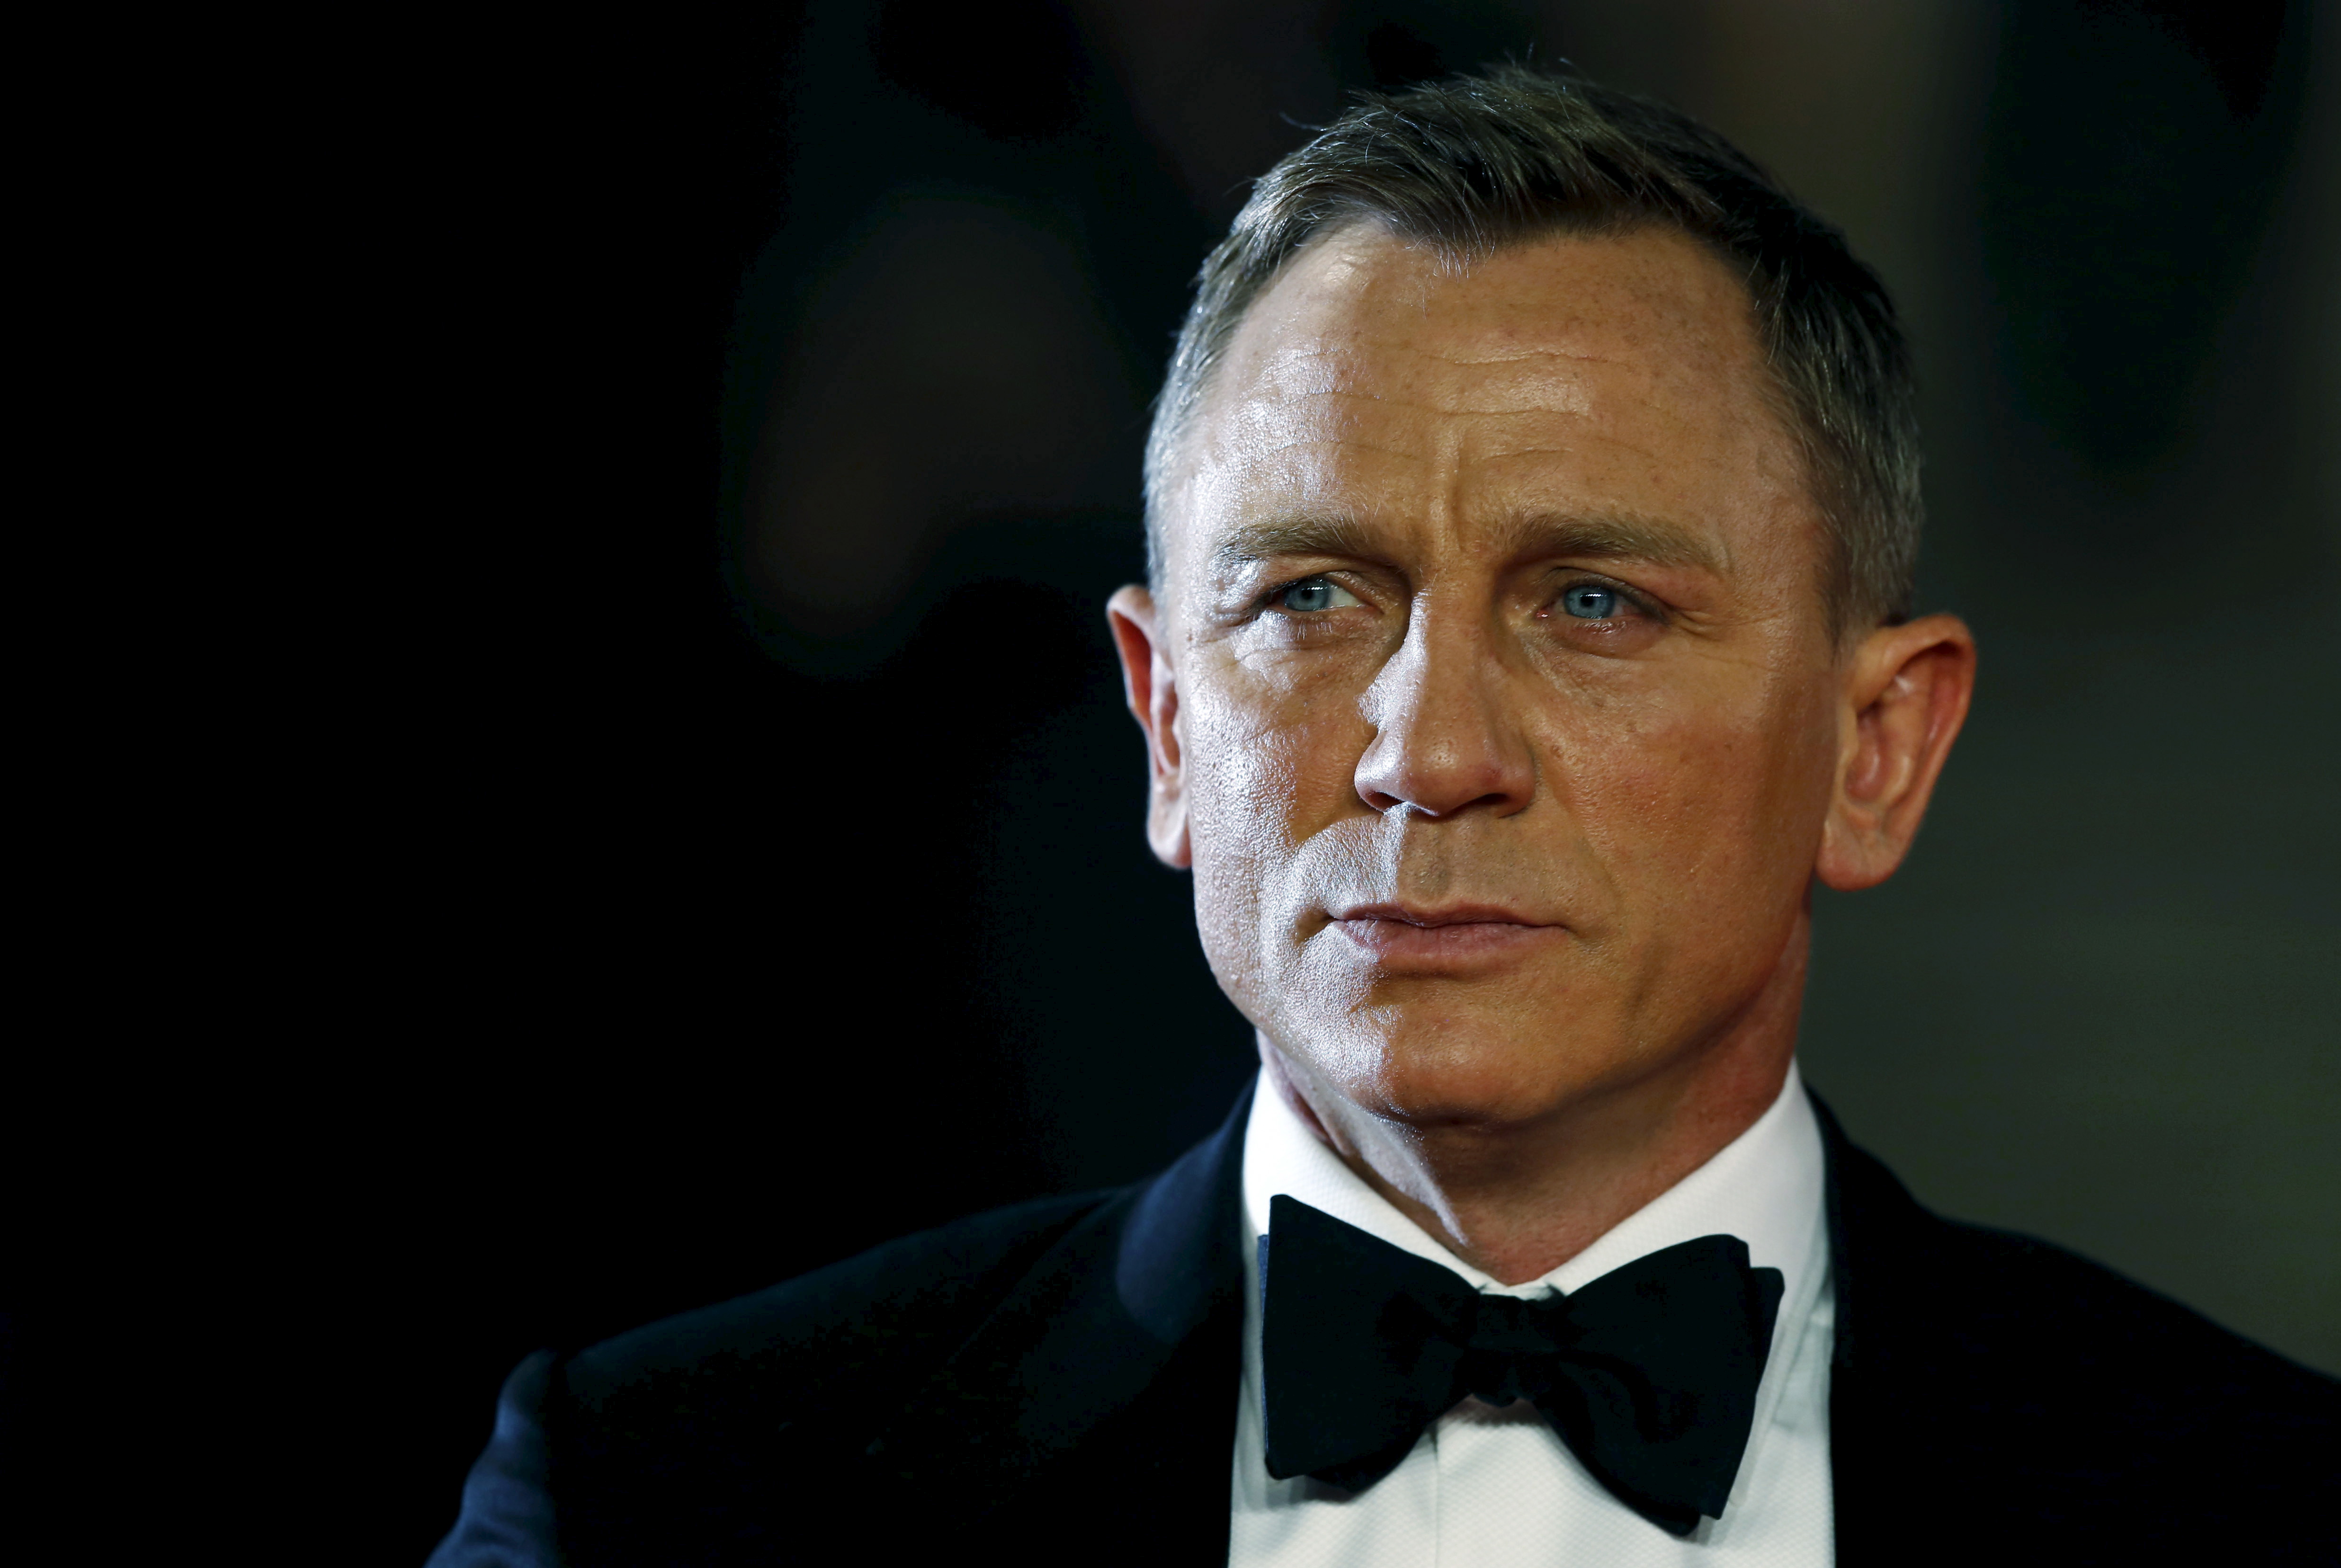 Las razones por las que Daniel Craig no quiere dejar una herencia al morir